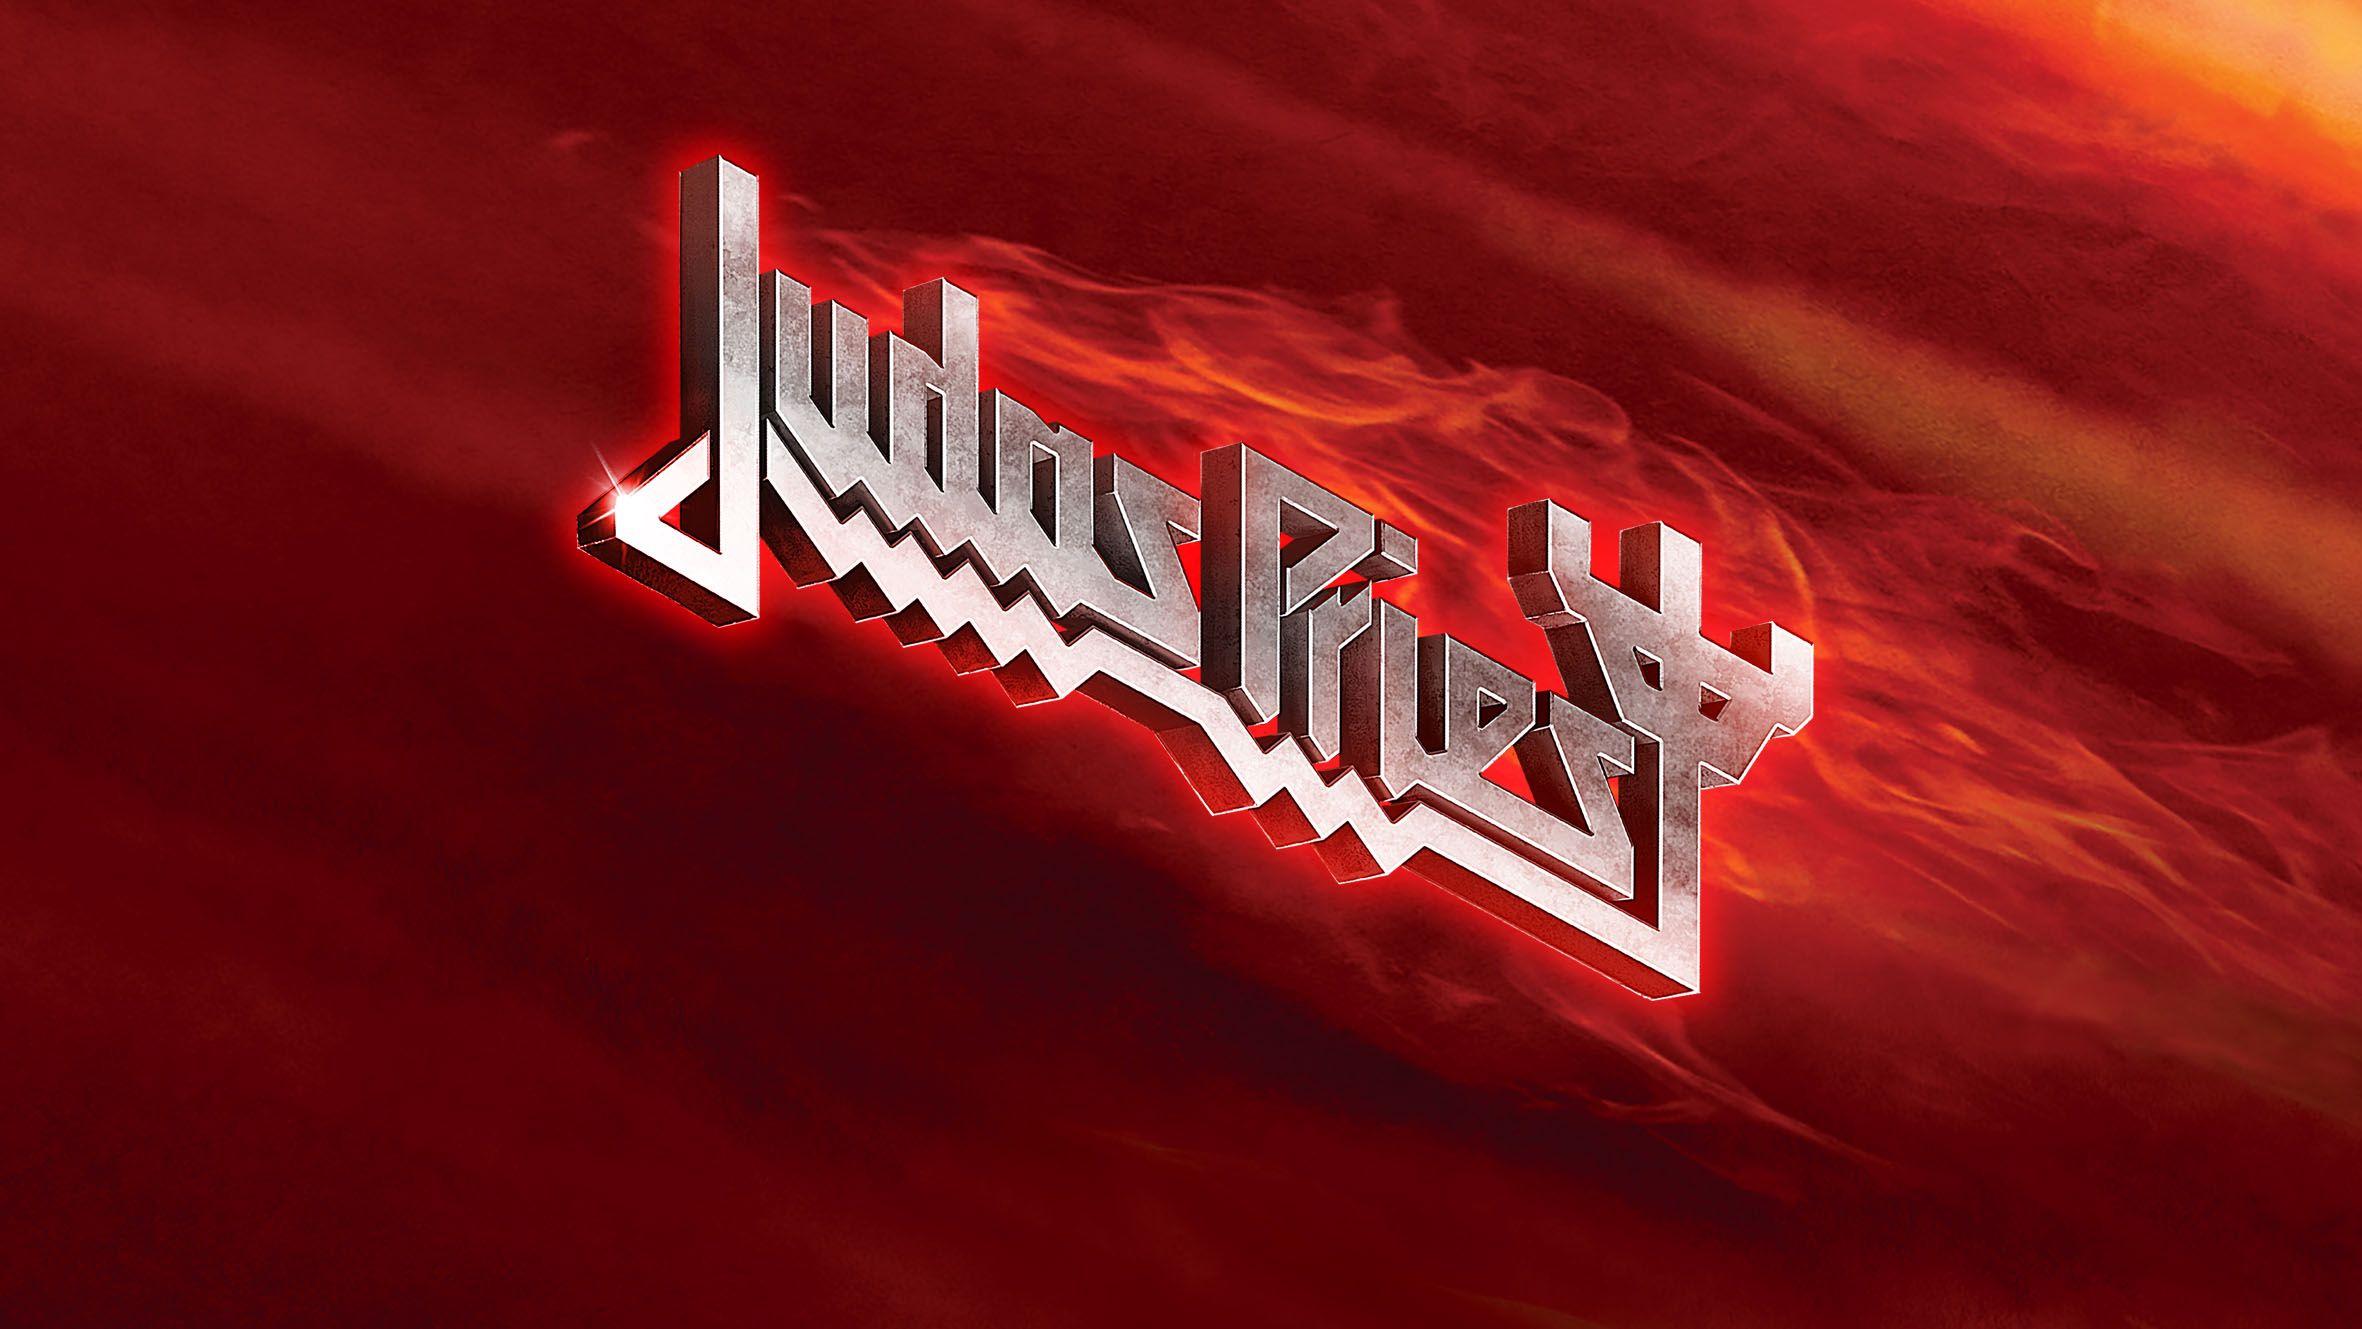 Judas Priest Band Logo - JudasPriest.com :: The Official Judas Priest Website